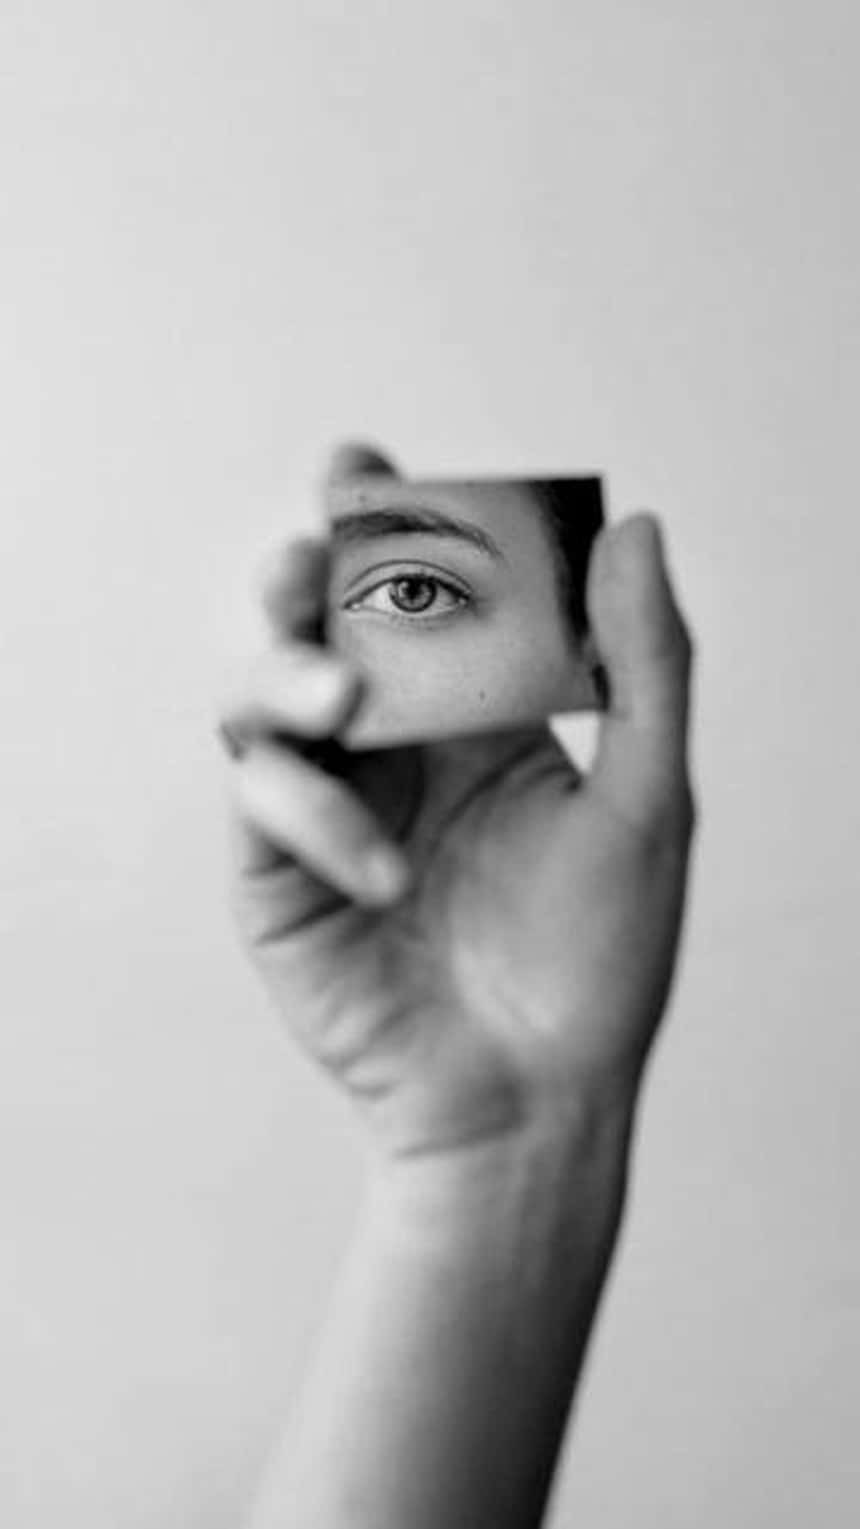 거울을 들고 있는 손이 보이는 Instagram 릴스용 흑백 이미지.